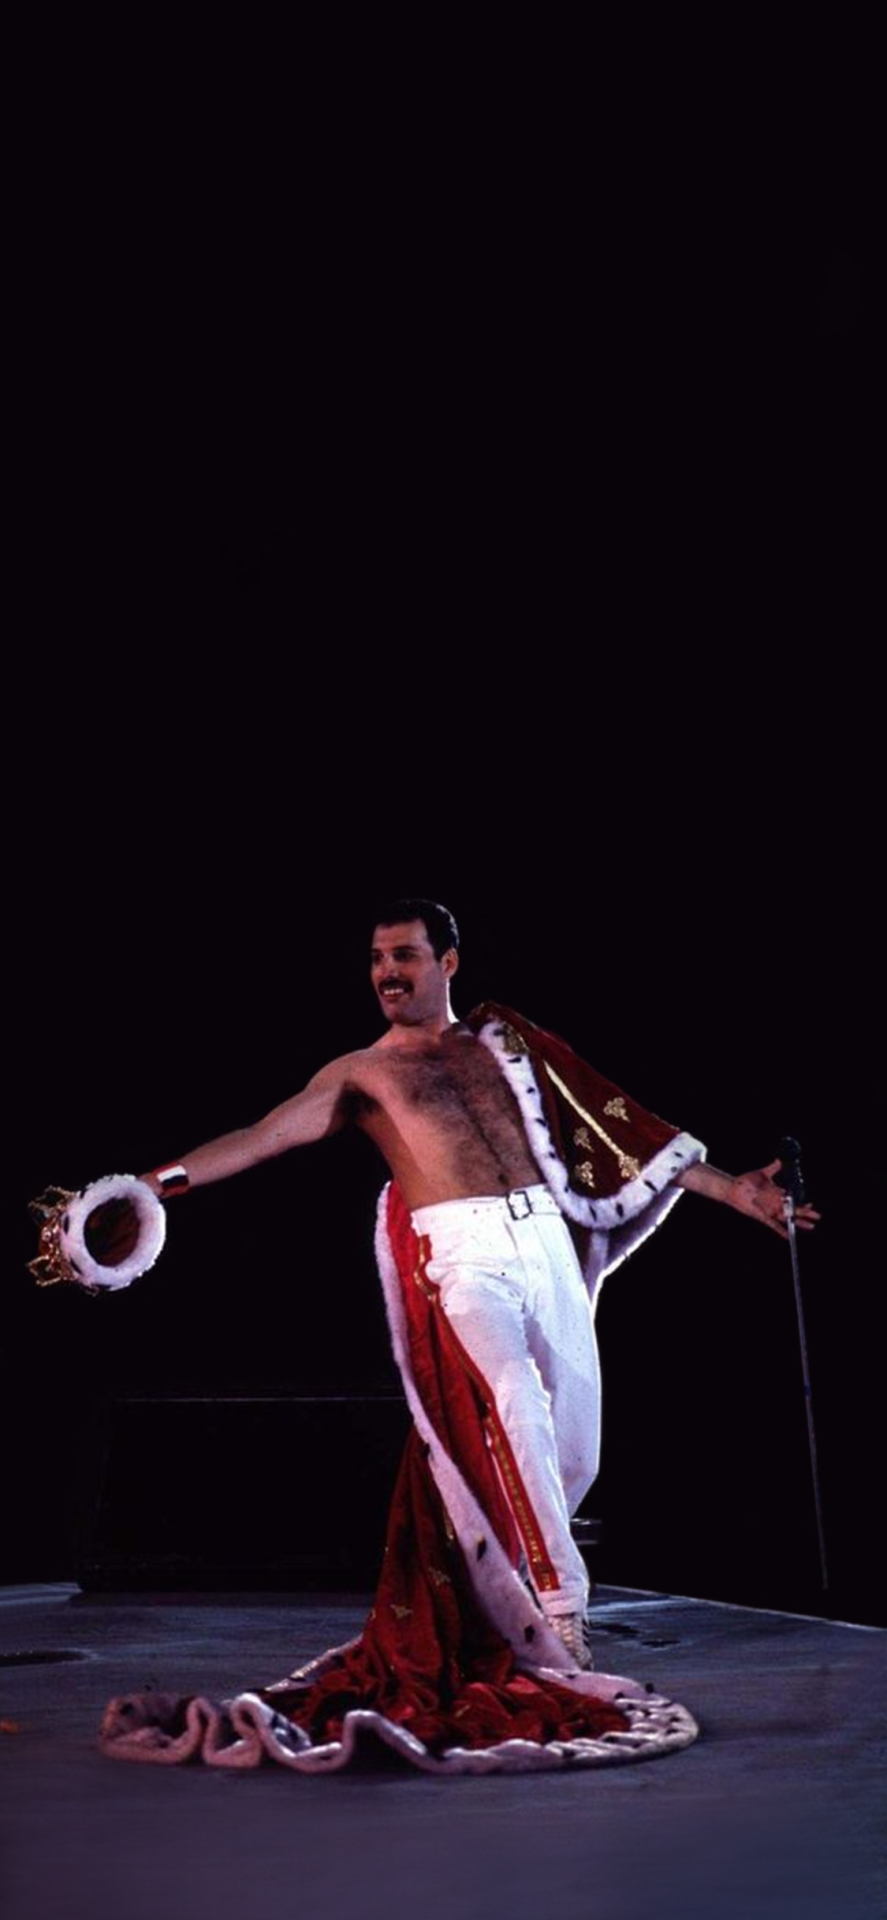 Freddie Mercury iPhone Wallpaper Free Freddie Mercury iPhone Background